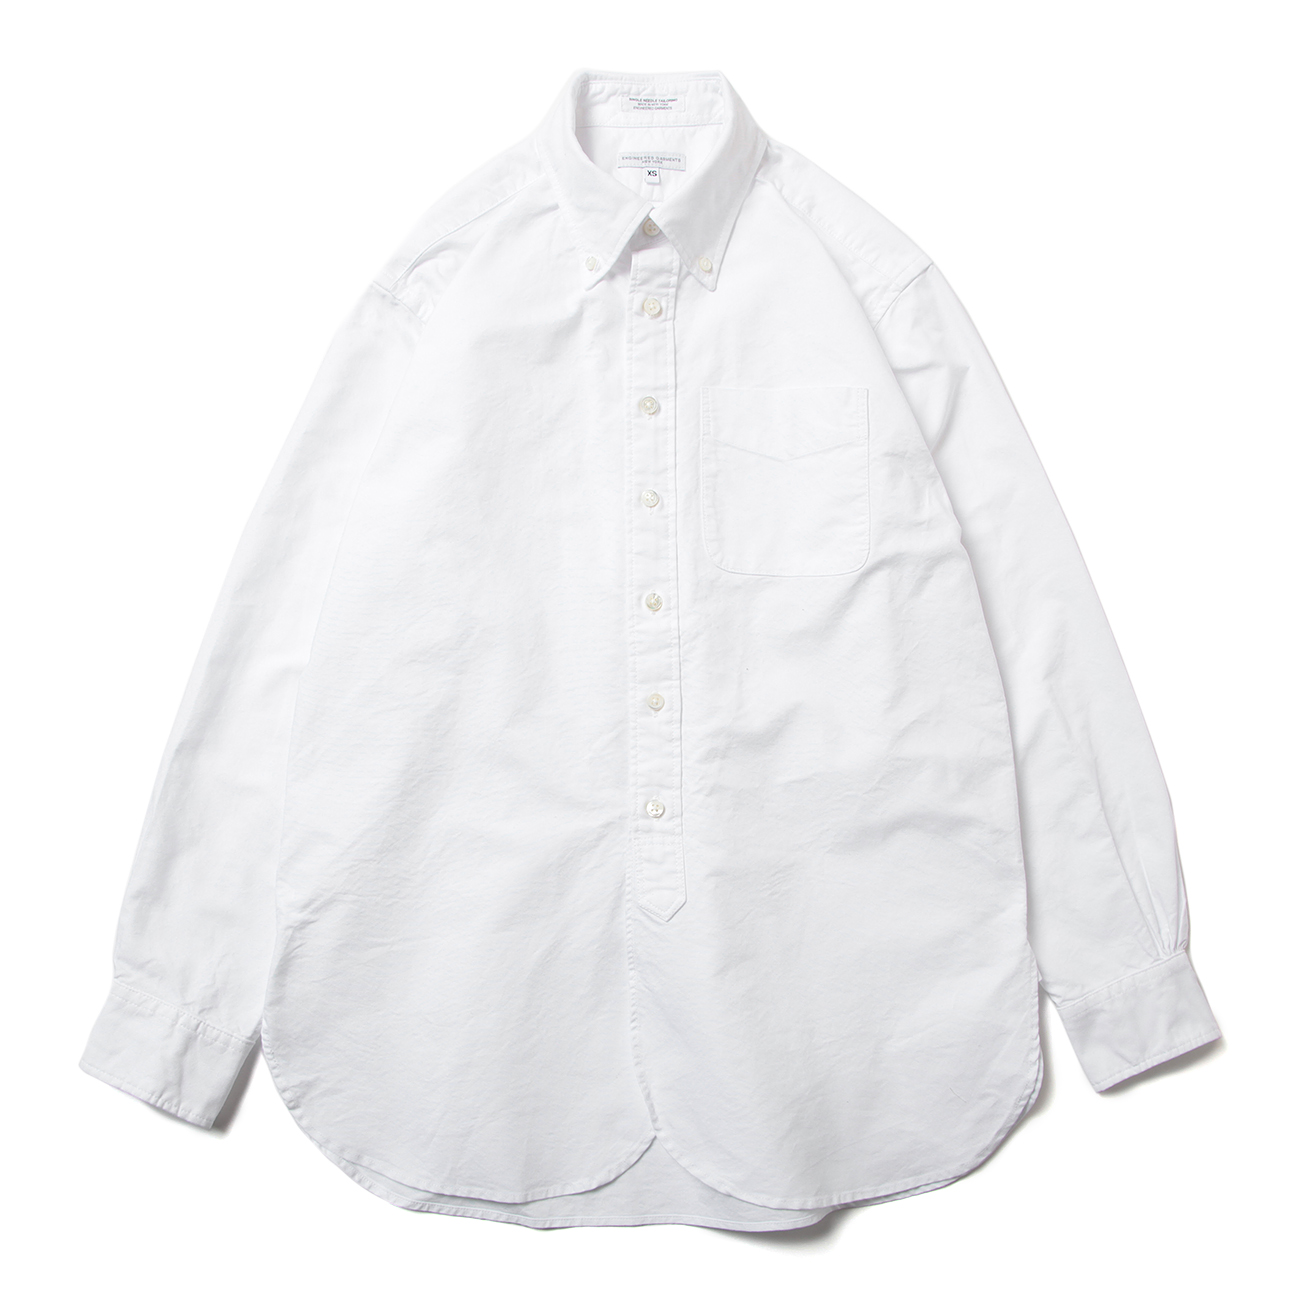 19 Century BD Shirt - Cotton Oxford - White